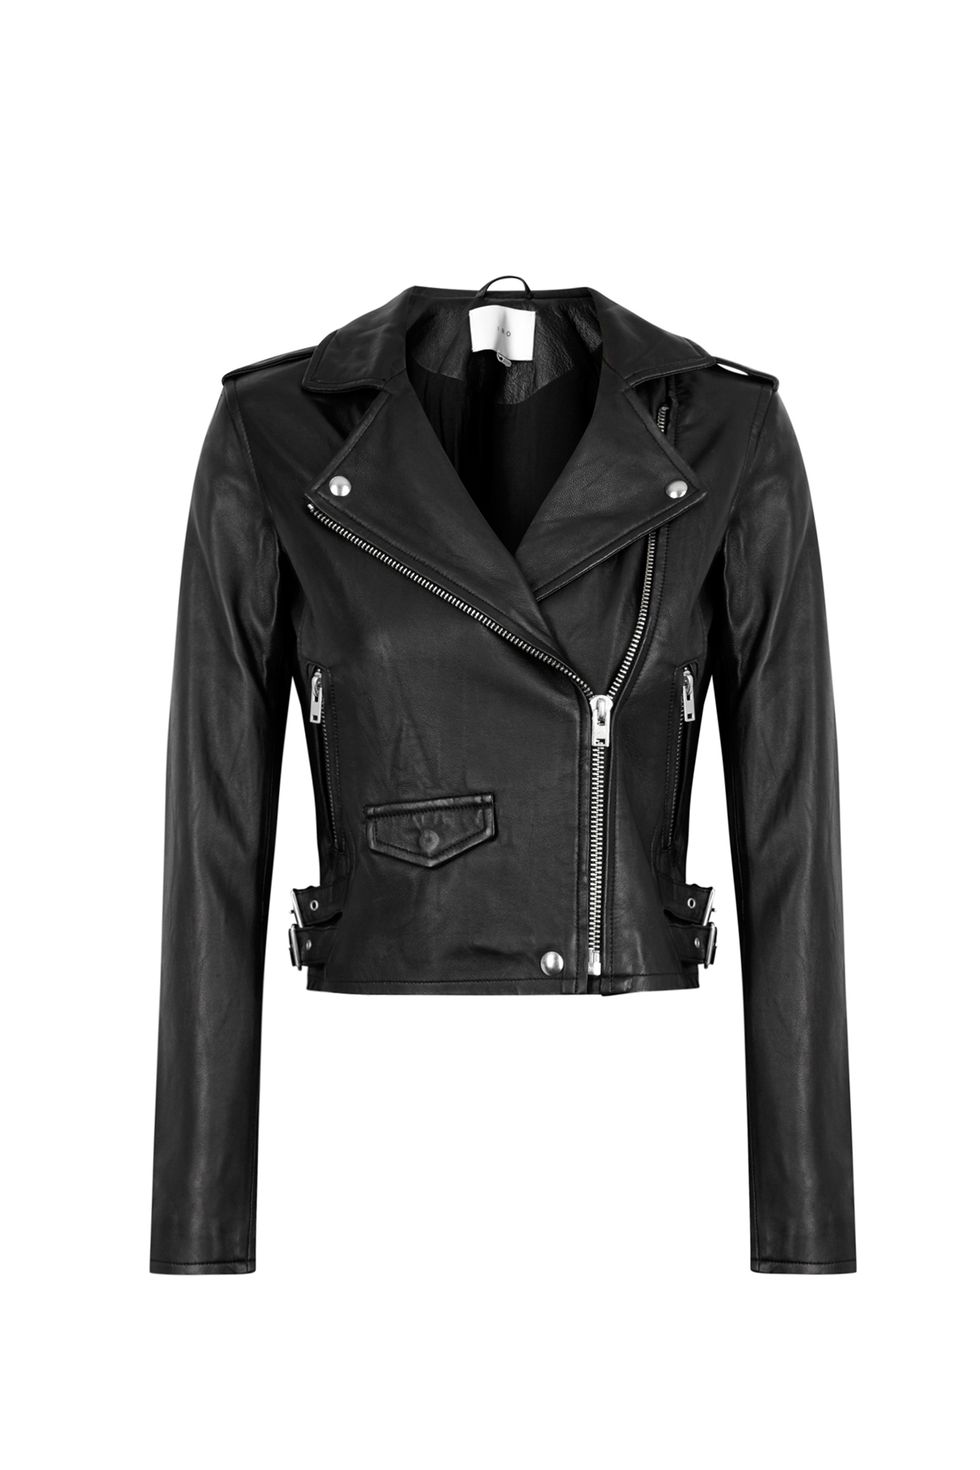 iro black leather jacket